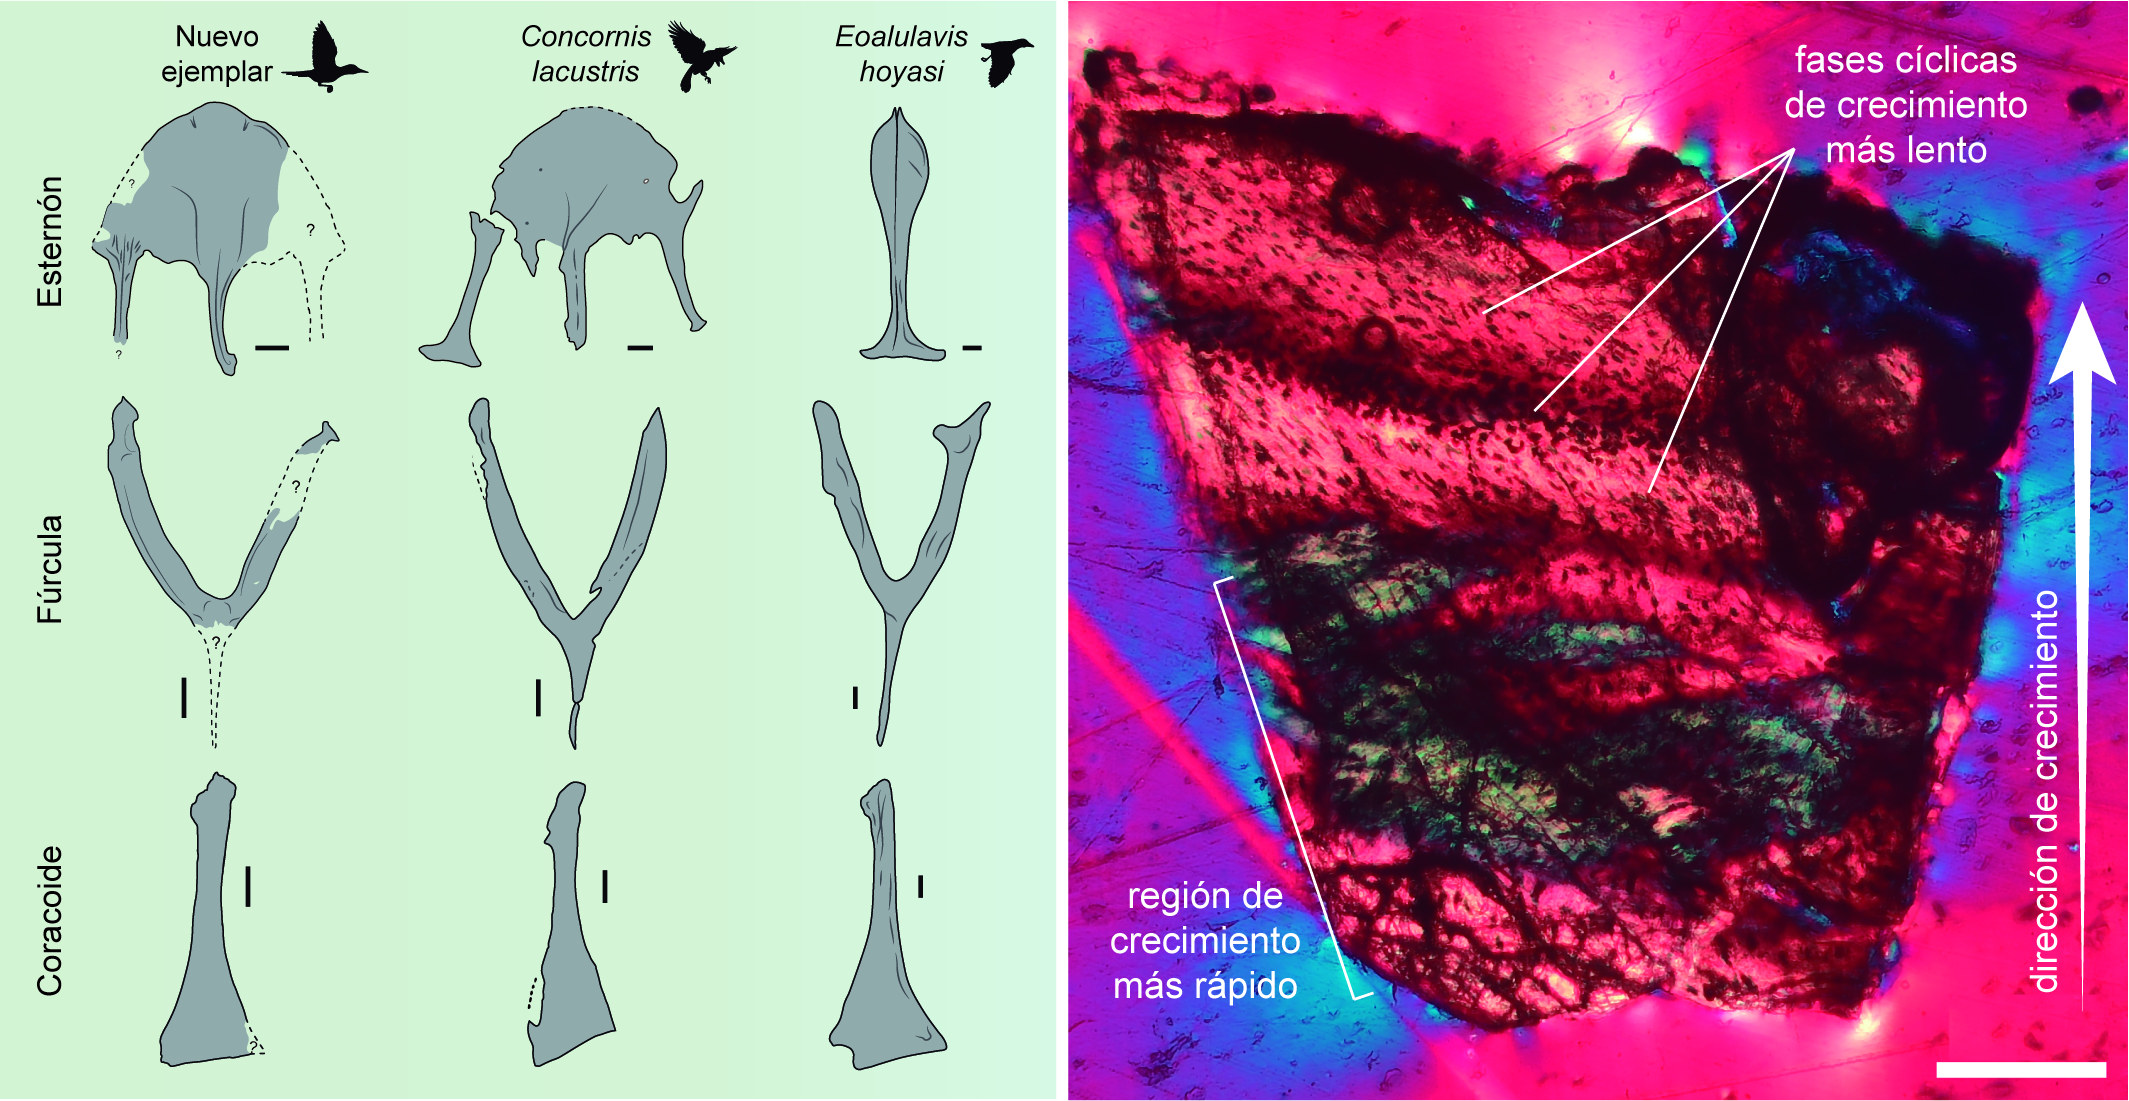 Diagrama de los huesos encontrados e imágen de su análisis en colores. 